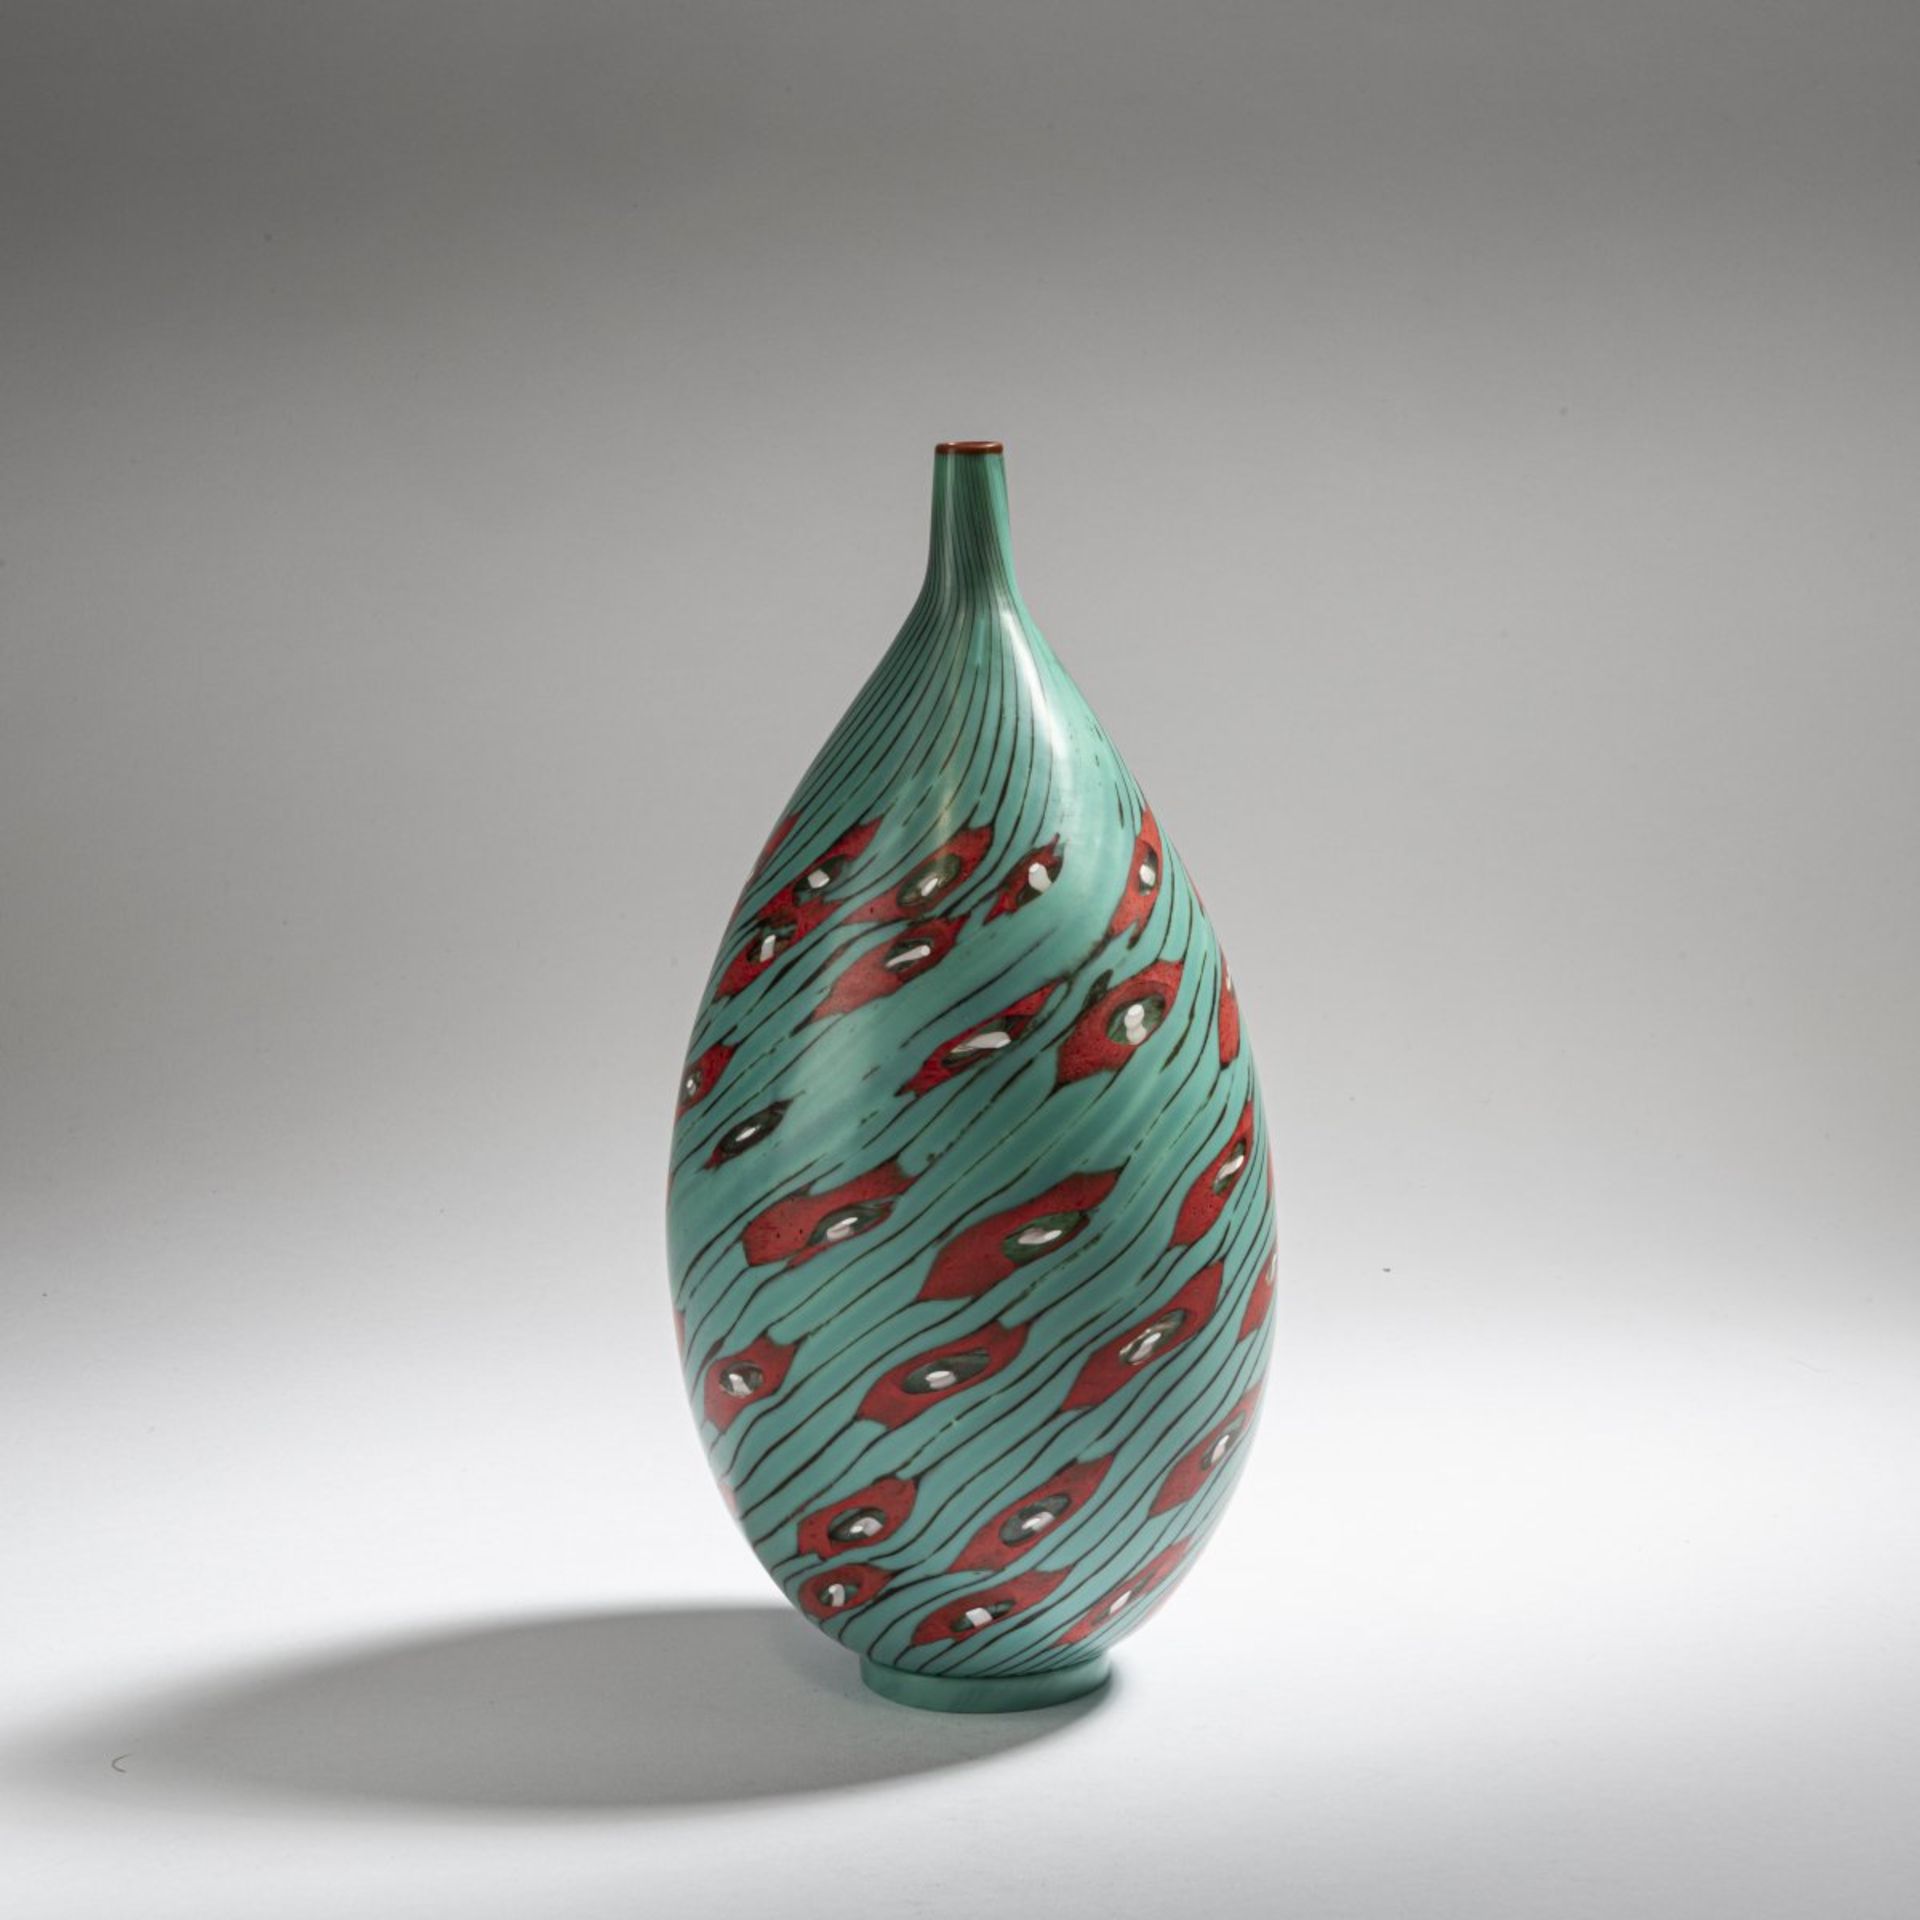 Yoichi Ohira, Unikat-Vase 'Fiori Verdi', 1998